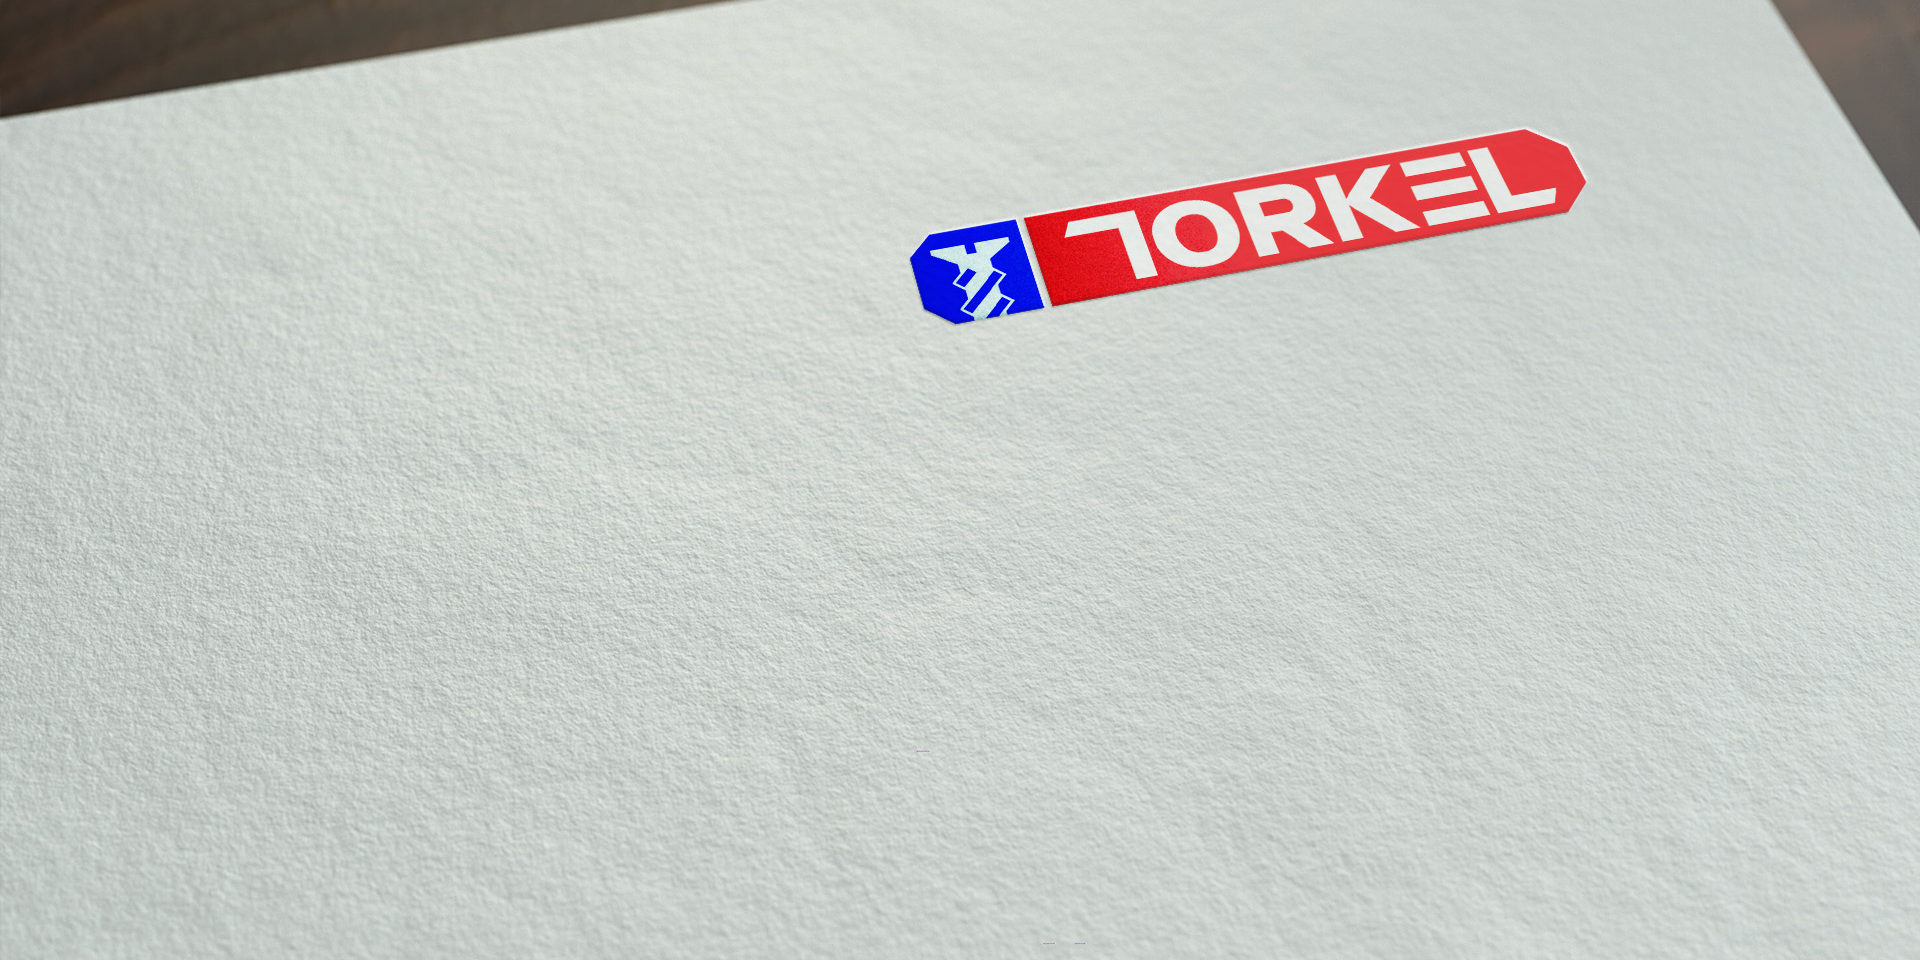 Definiendo nuestra marca - Torkel